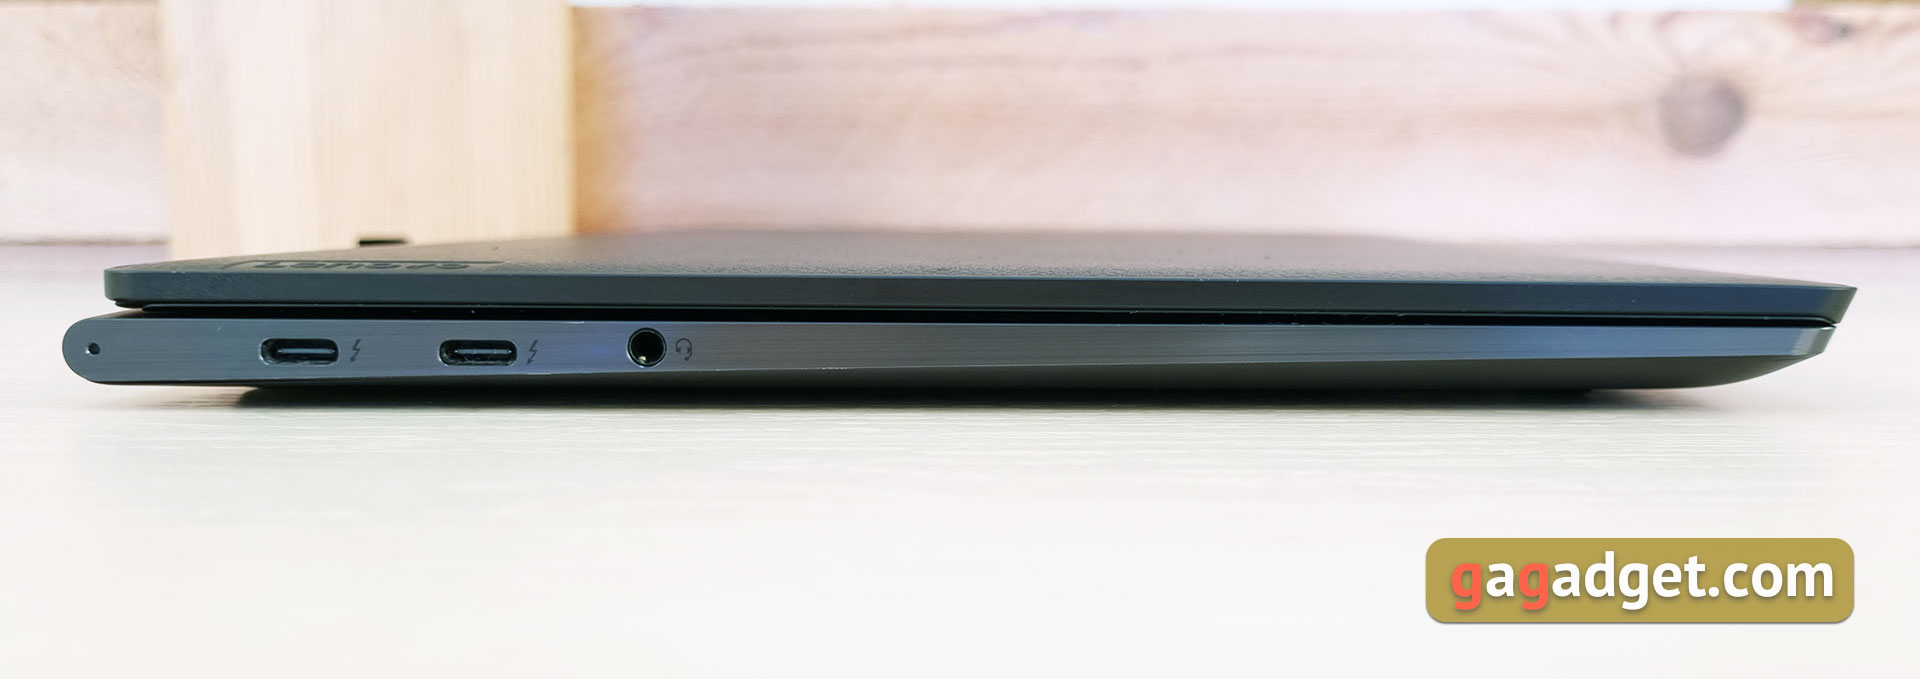 Обзор ноутбука Lenovo YOGA Slim 9i: командный центр бизнеса-14